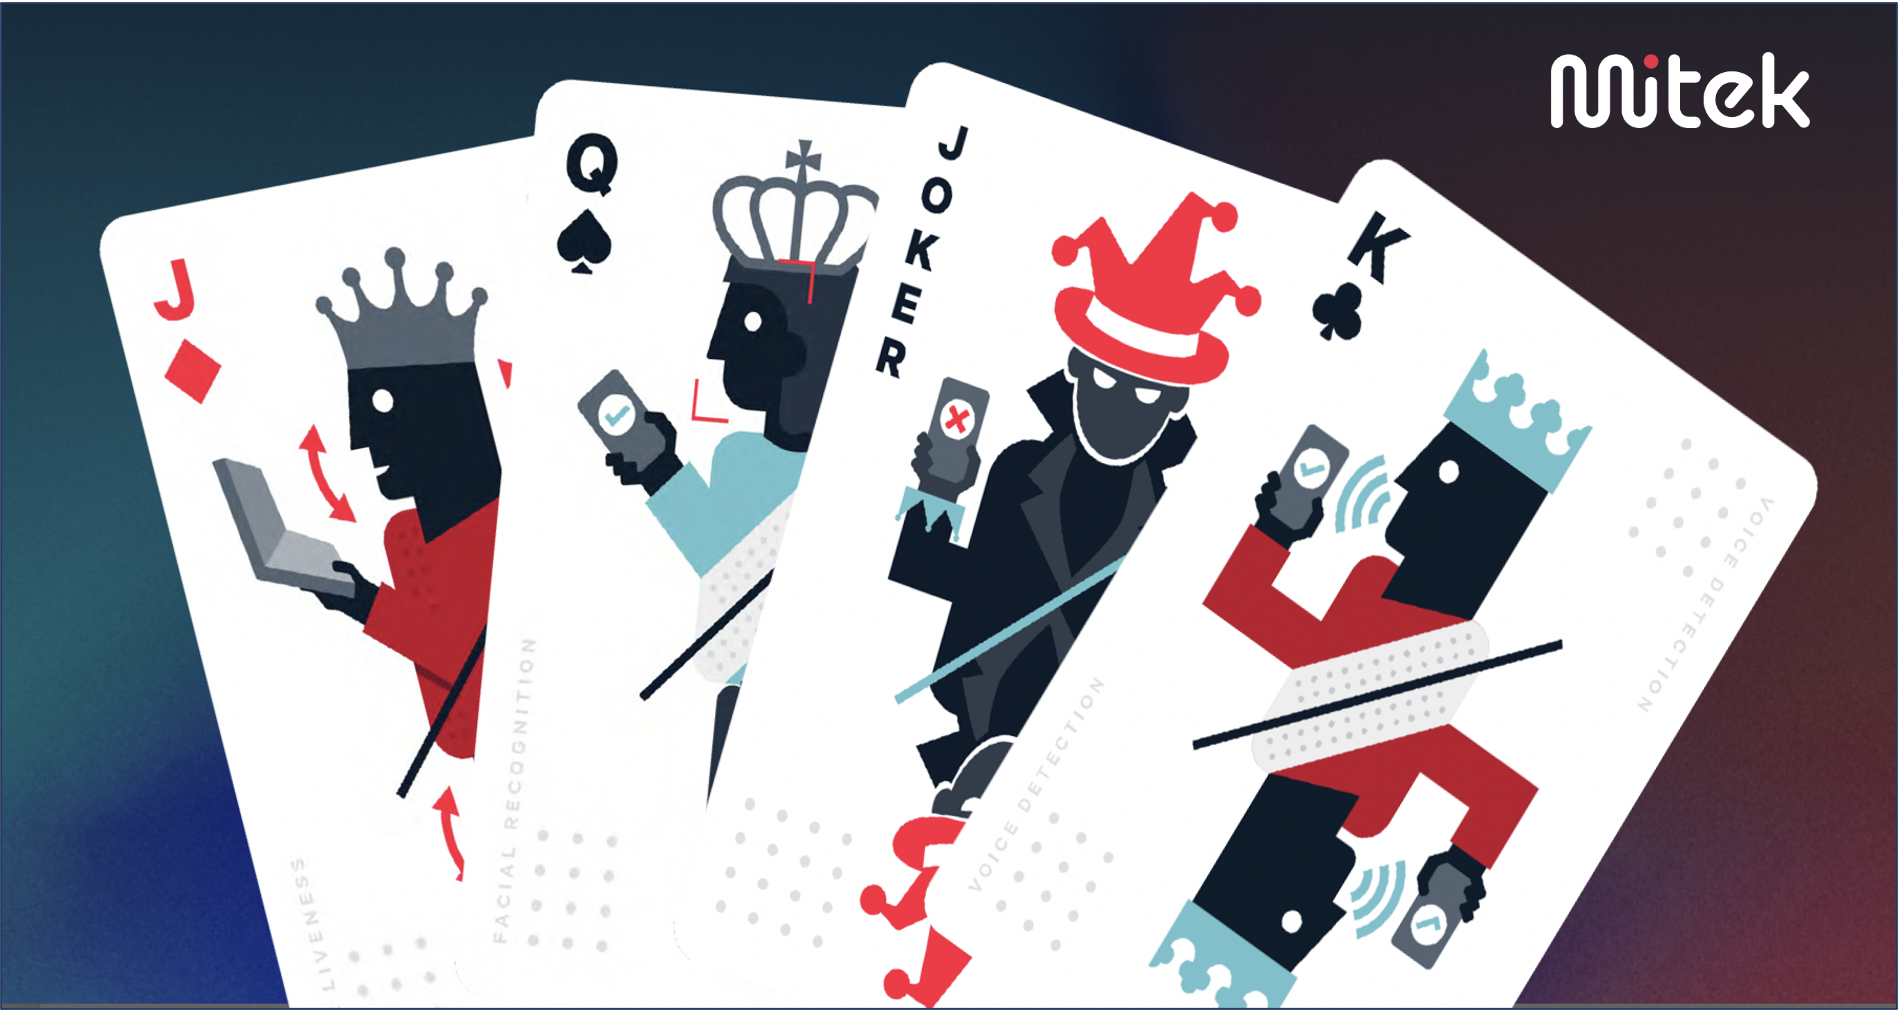 Mitek deck of cards